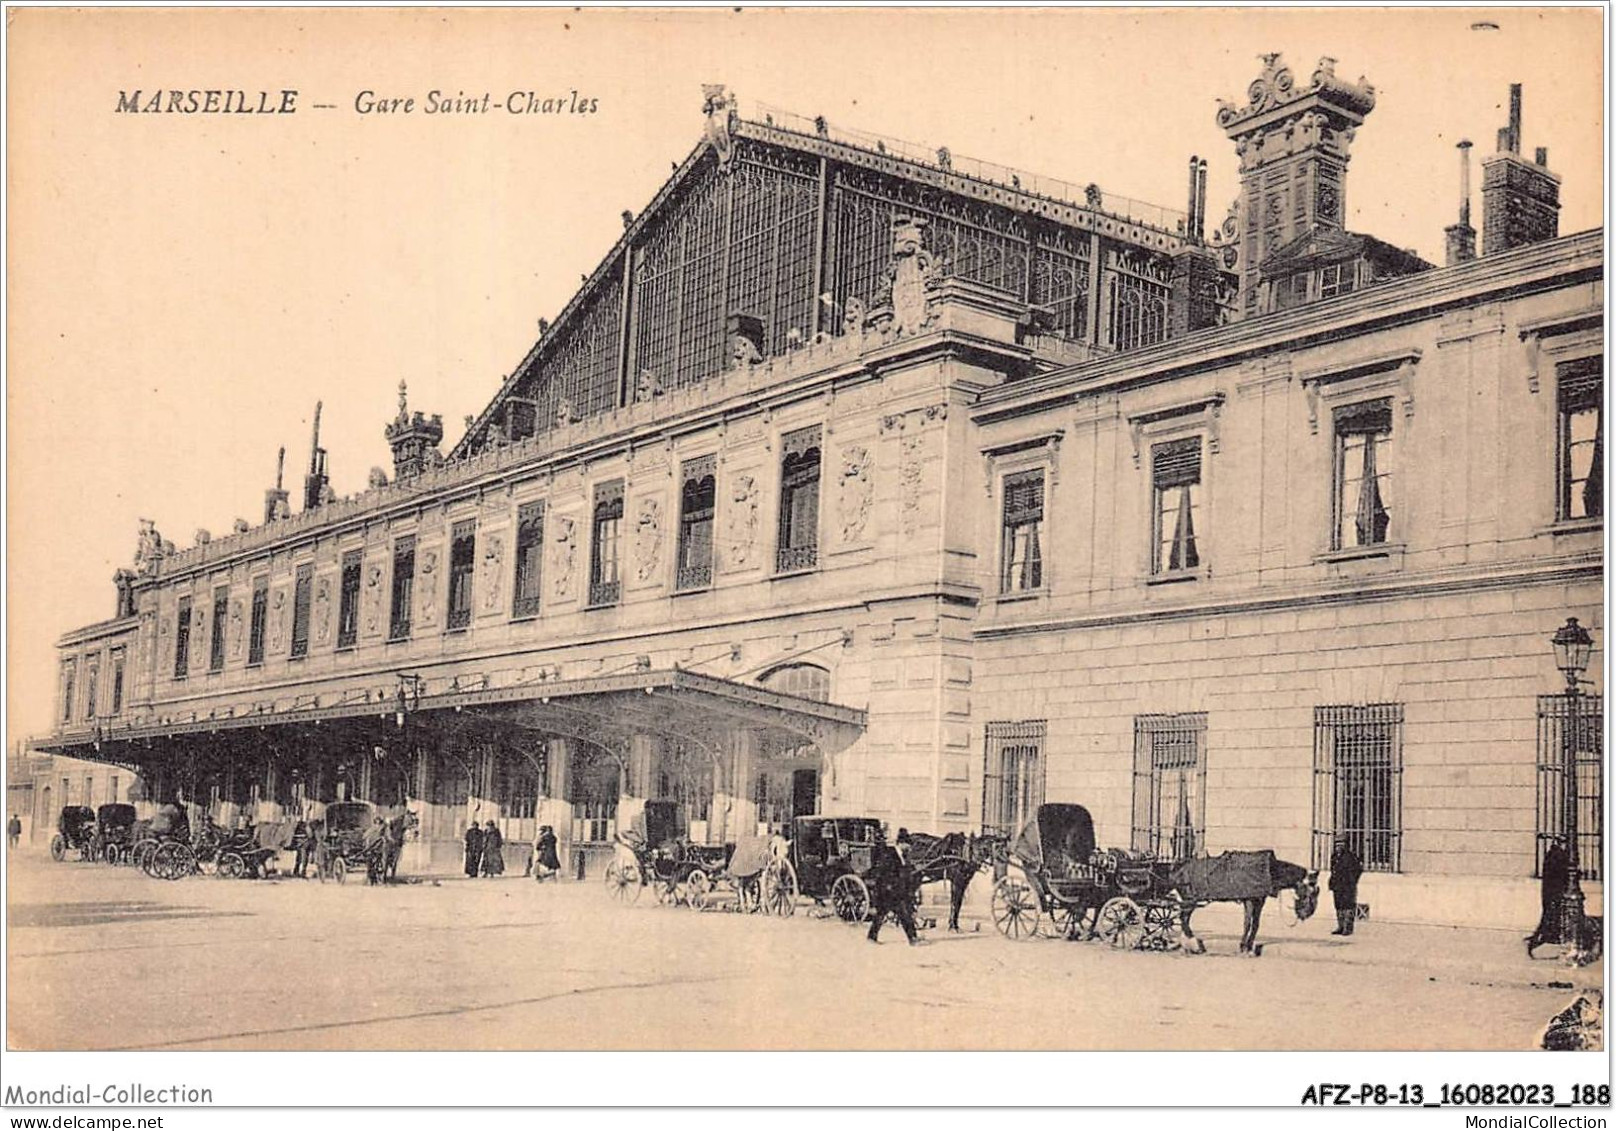 AFZP8-13-0682 - MARSEILLE - Gare Saint-charles - Bahnhof, Belle De Mai, Plombières